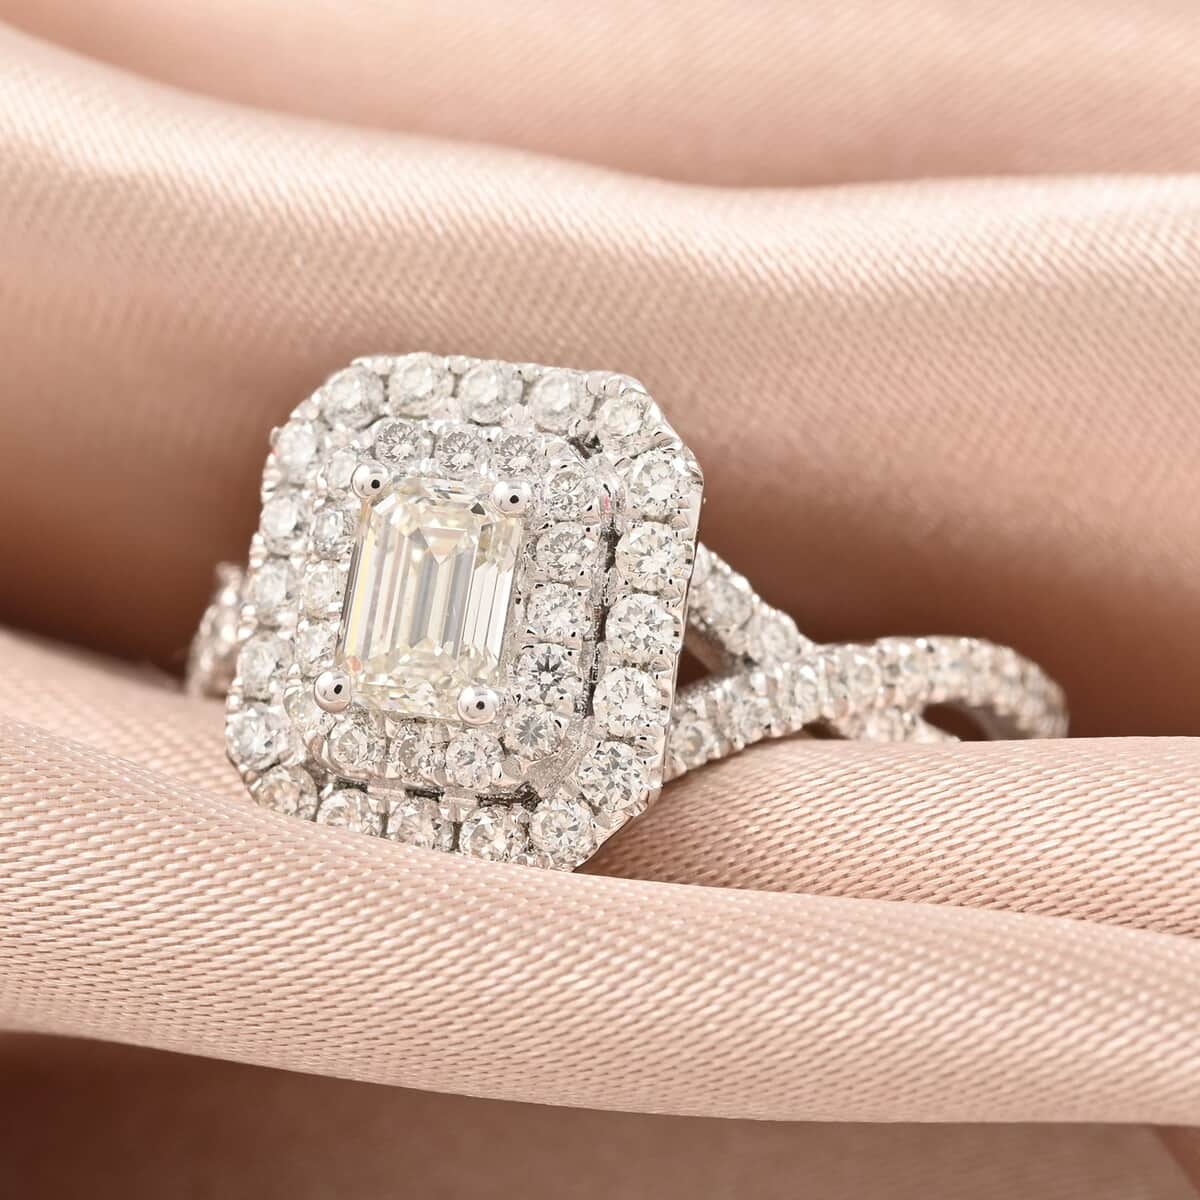 Modani 950 Platinum Diamond E-F VS Ring (Size 10.0) 7 Grams 1.30 ctw image number 1